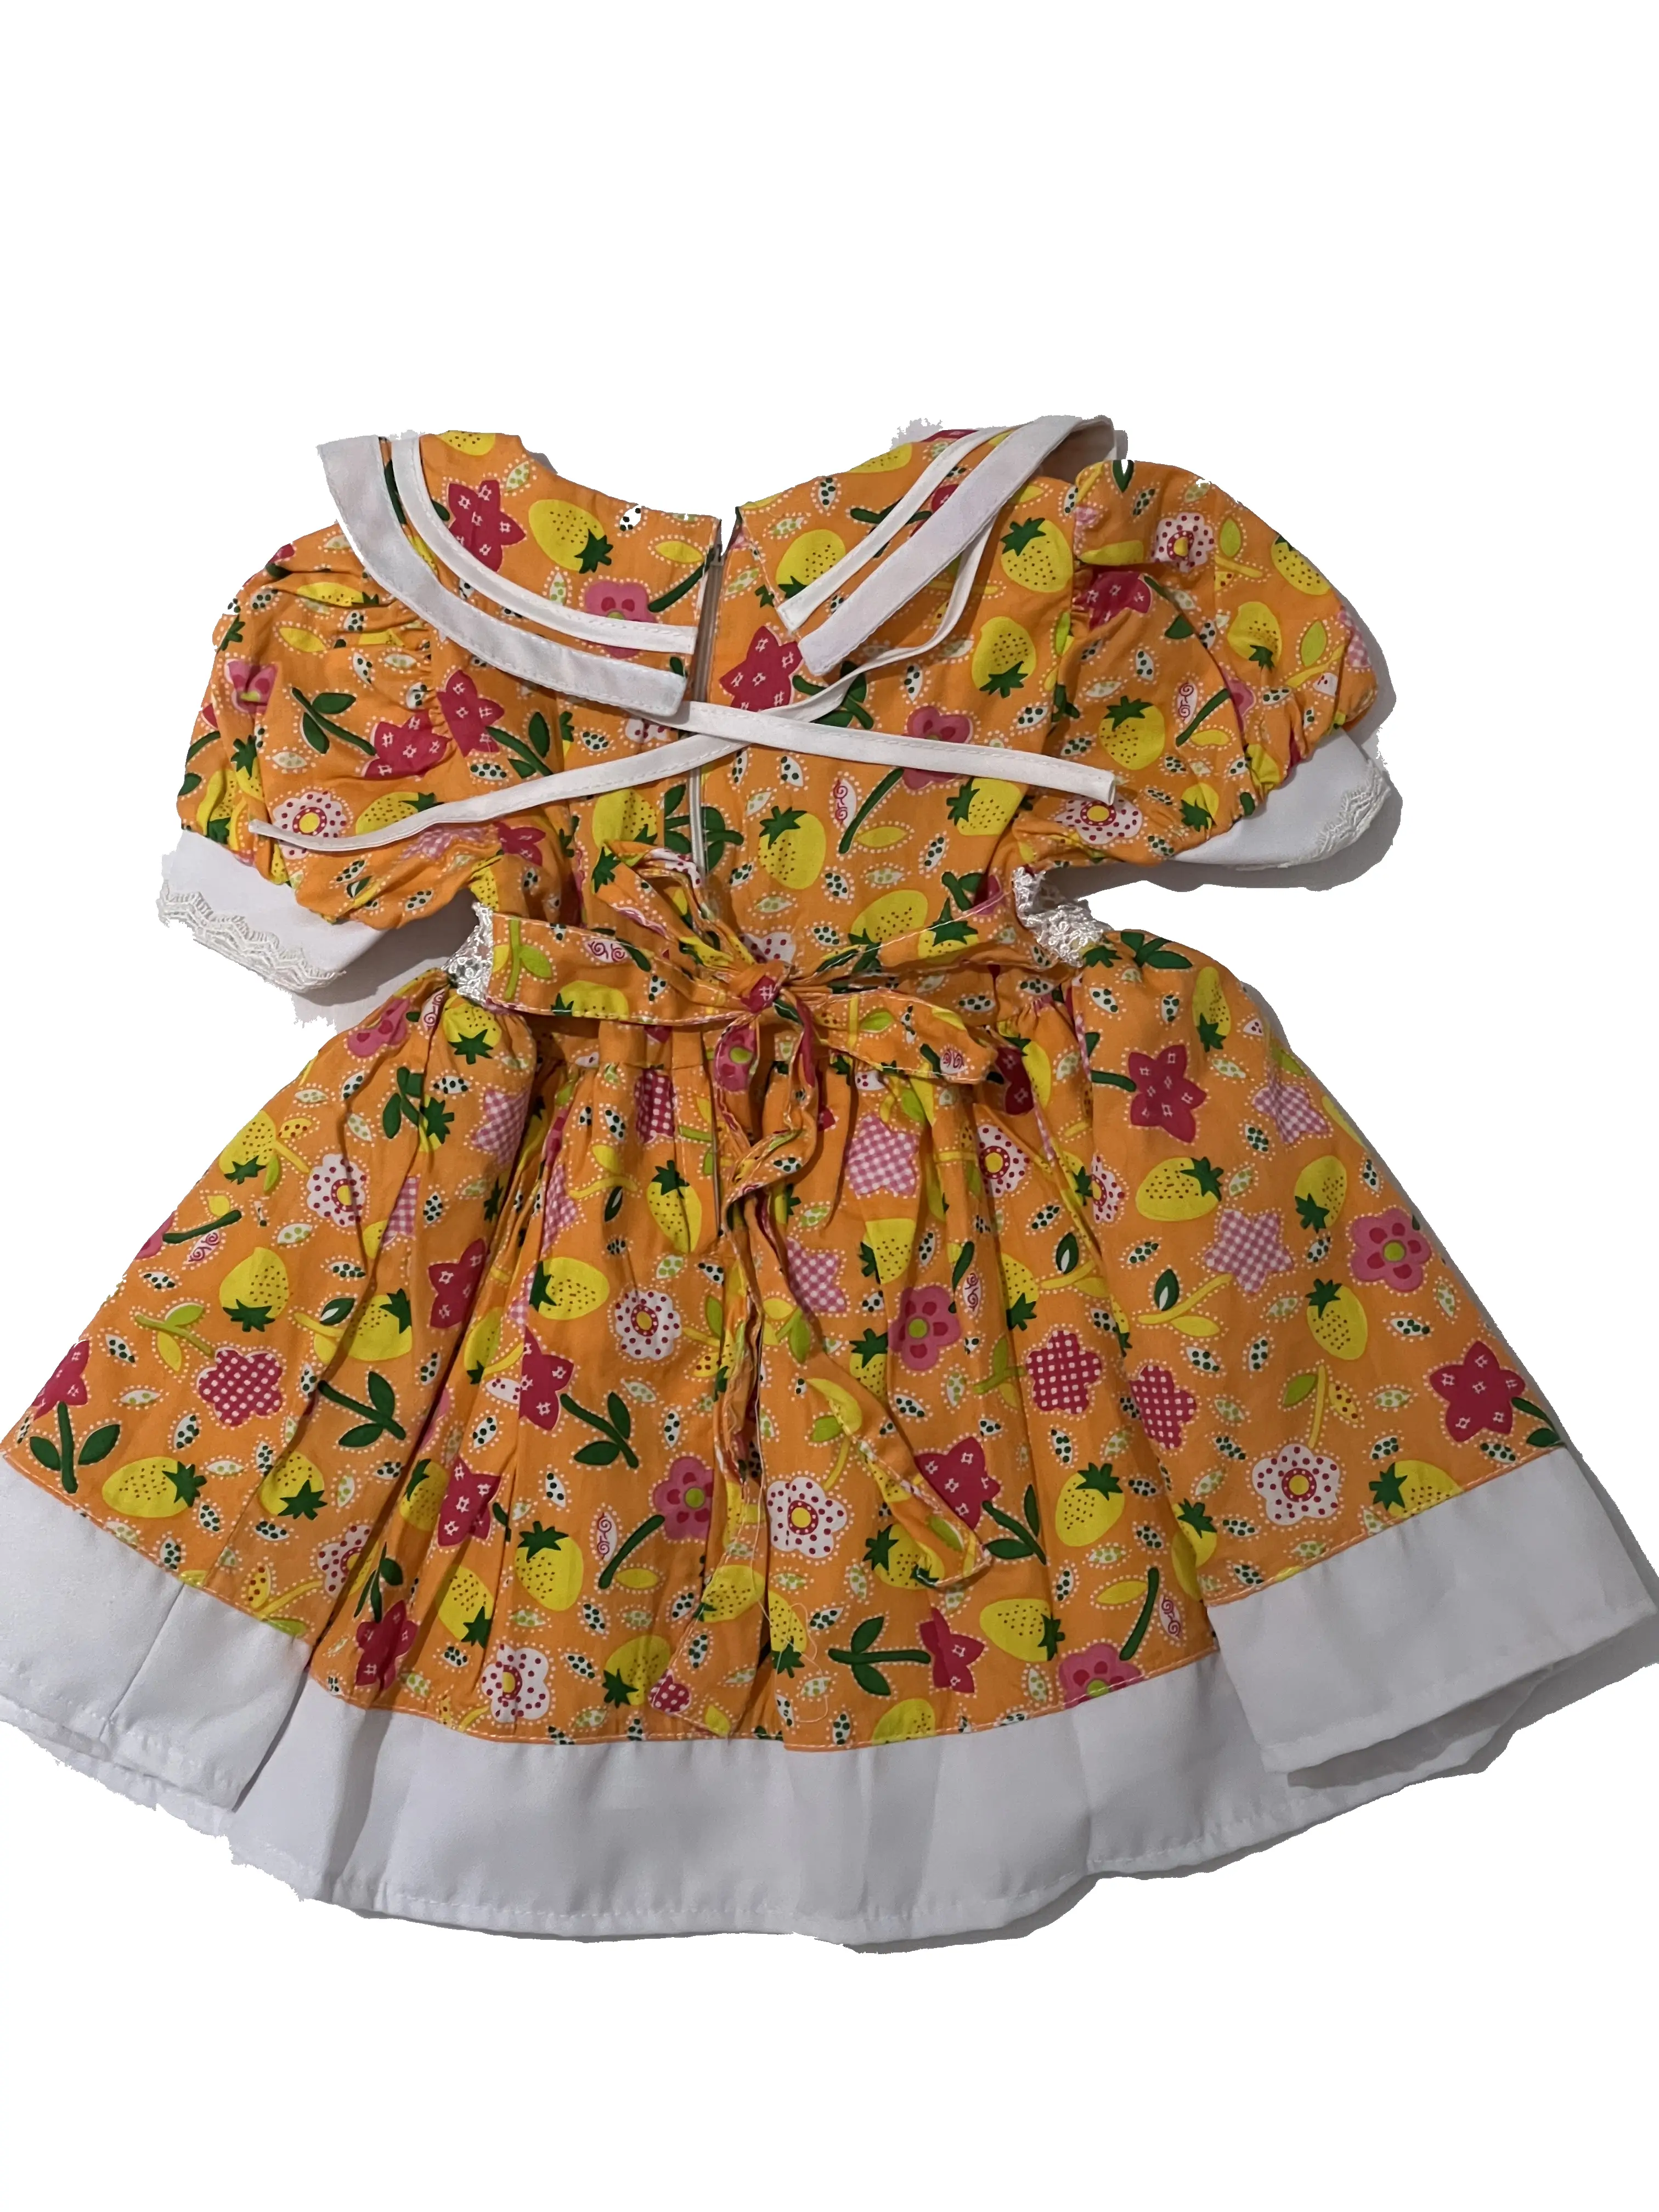 Παιδικό φόρεμα floral πορτοκαλί